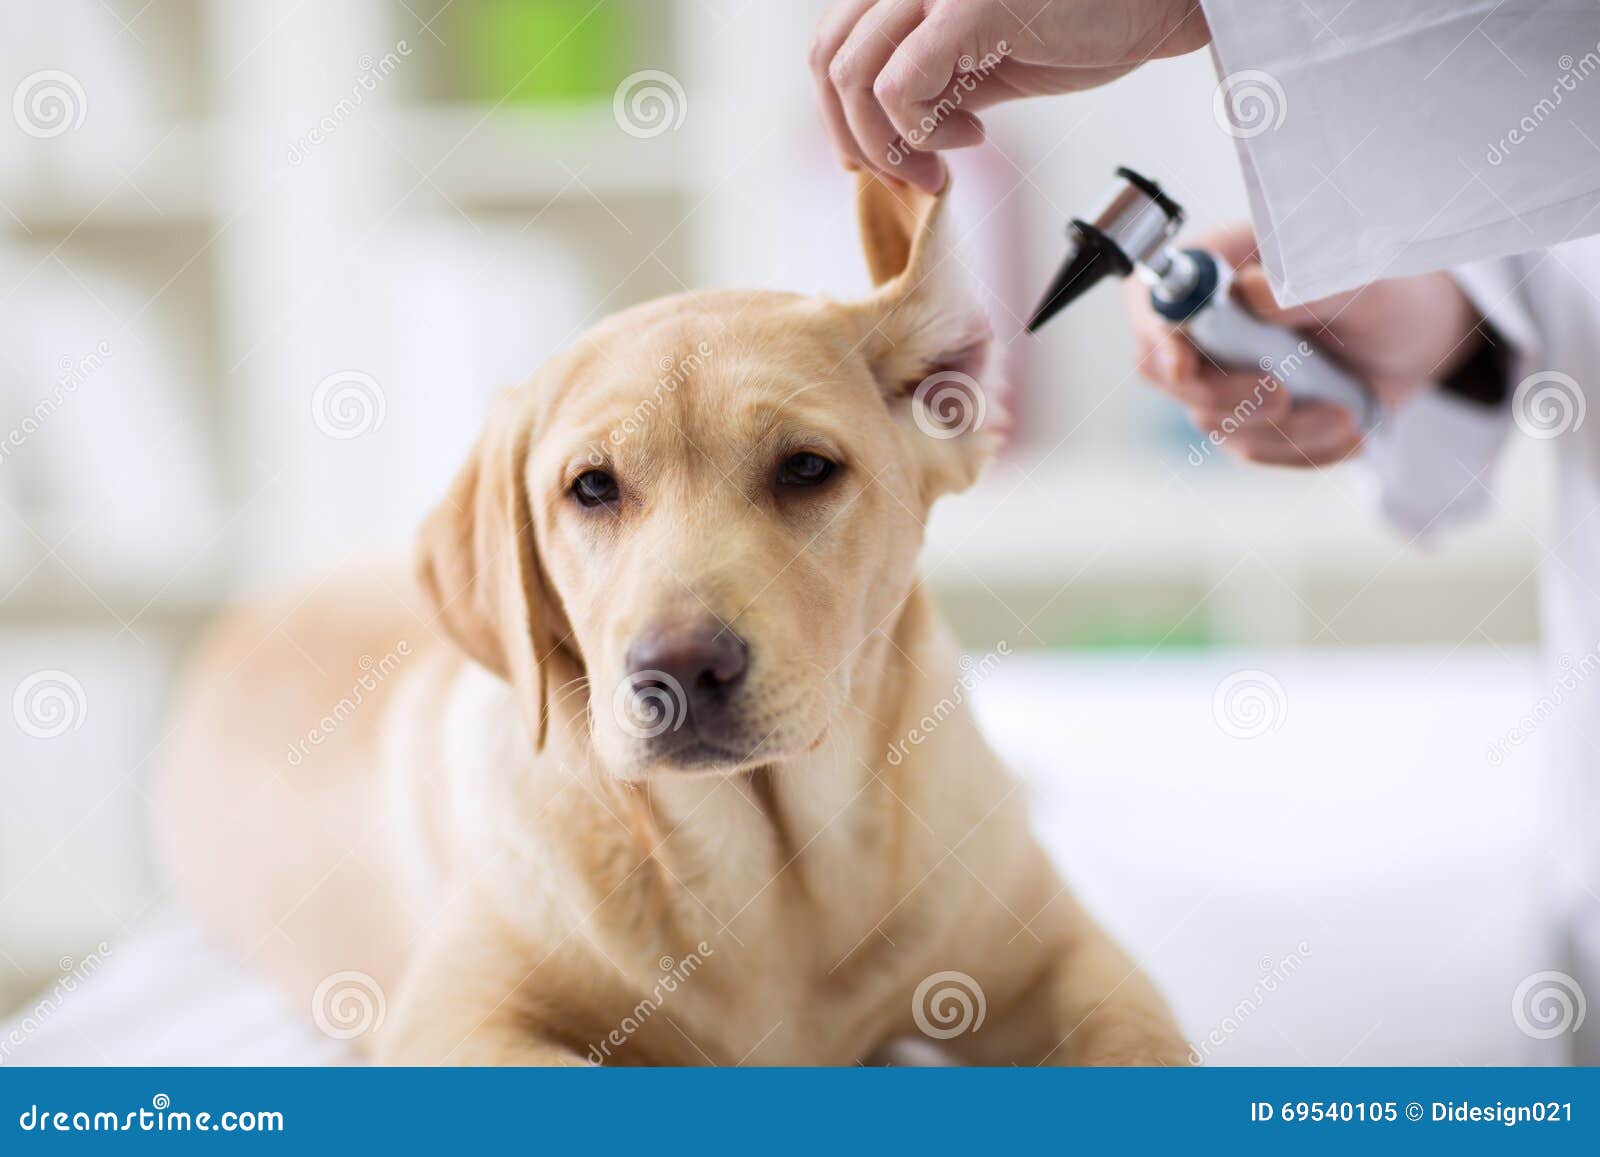 hearing checkup of labrador dog in vet